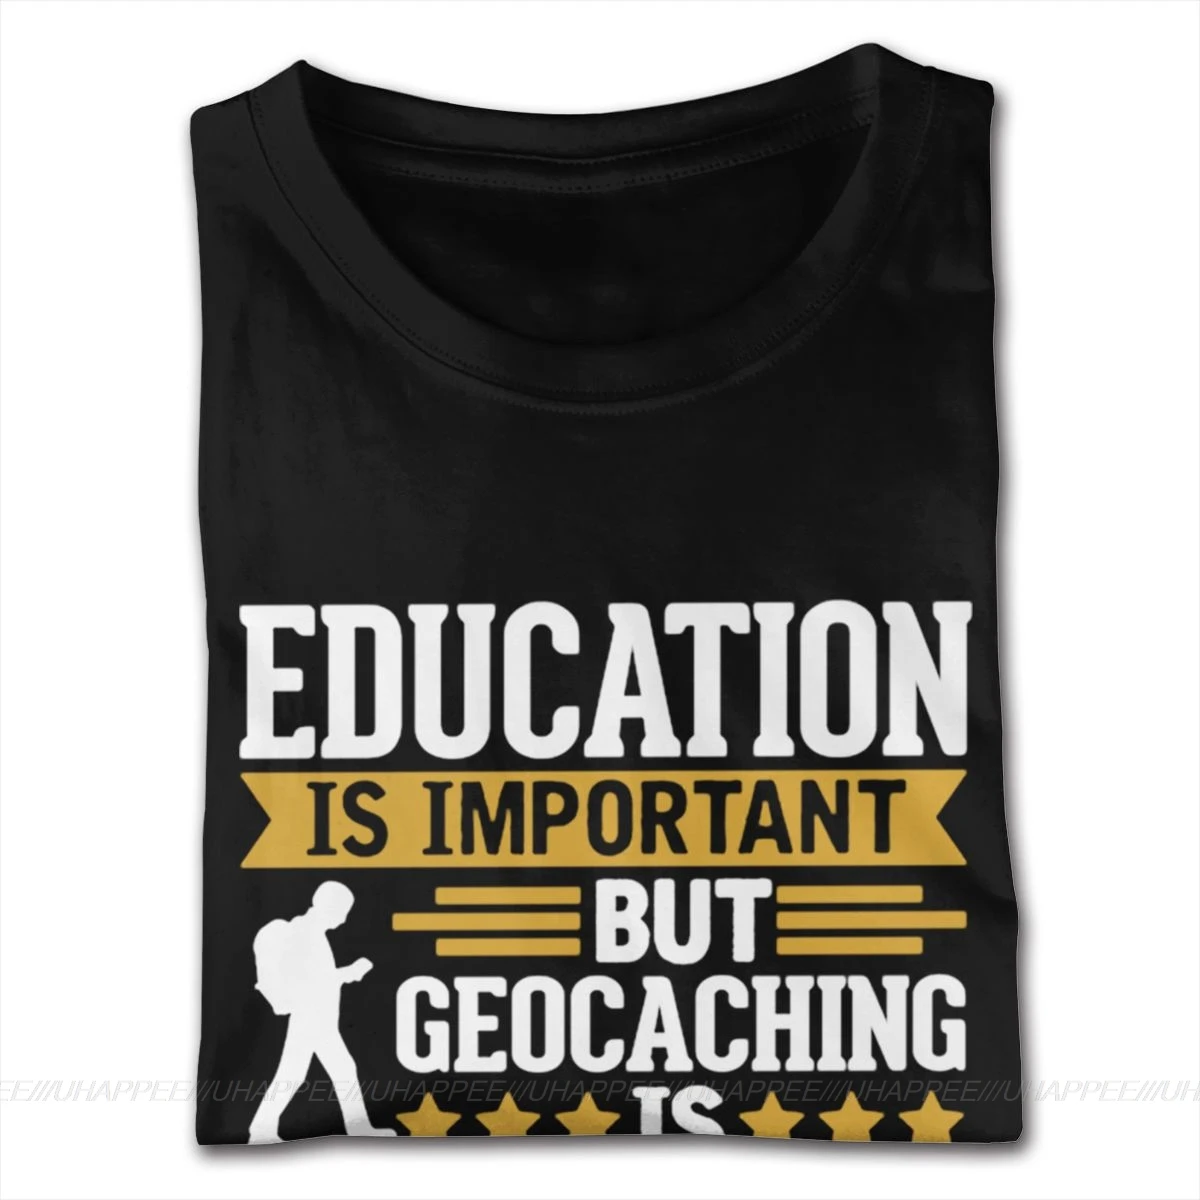 Geocaching Es Importanter Foto de la Camiseta S-6XL Muchacho Diseño de la Camiseta 5